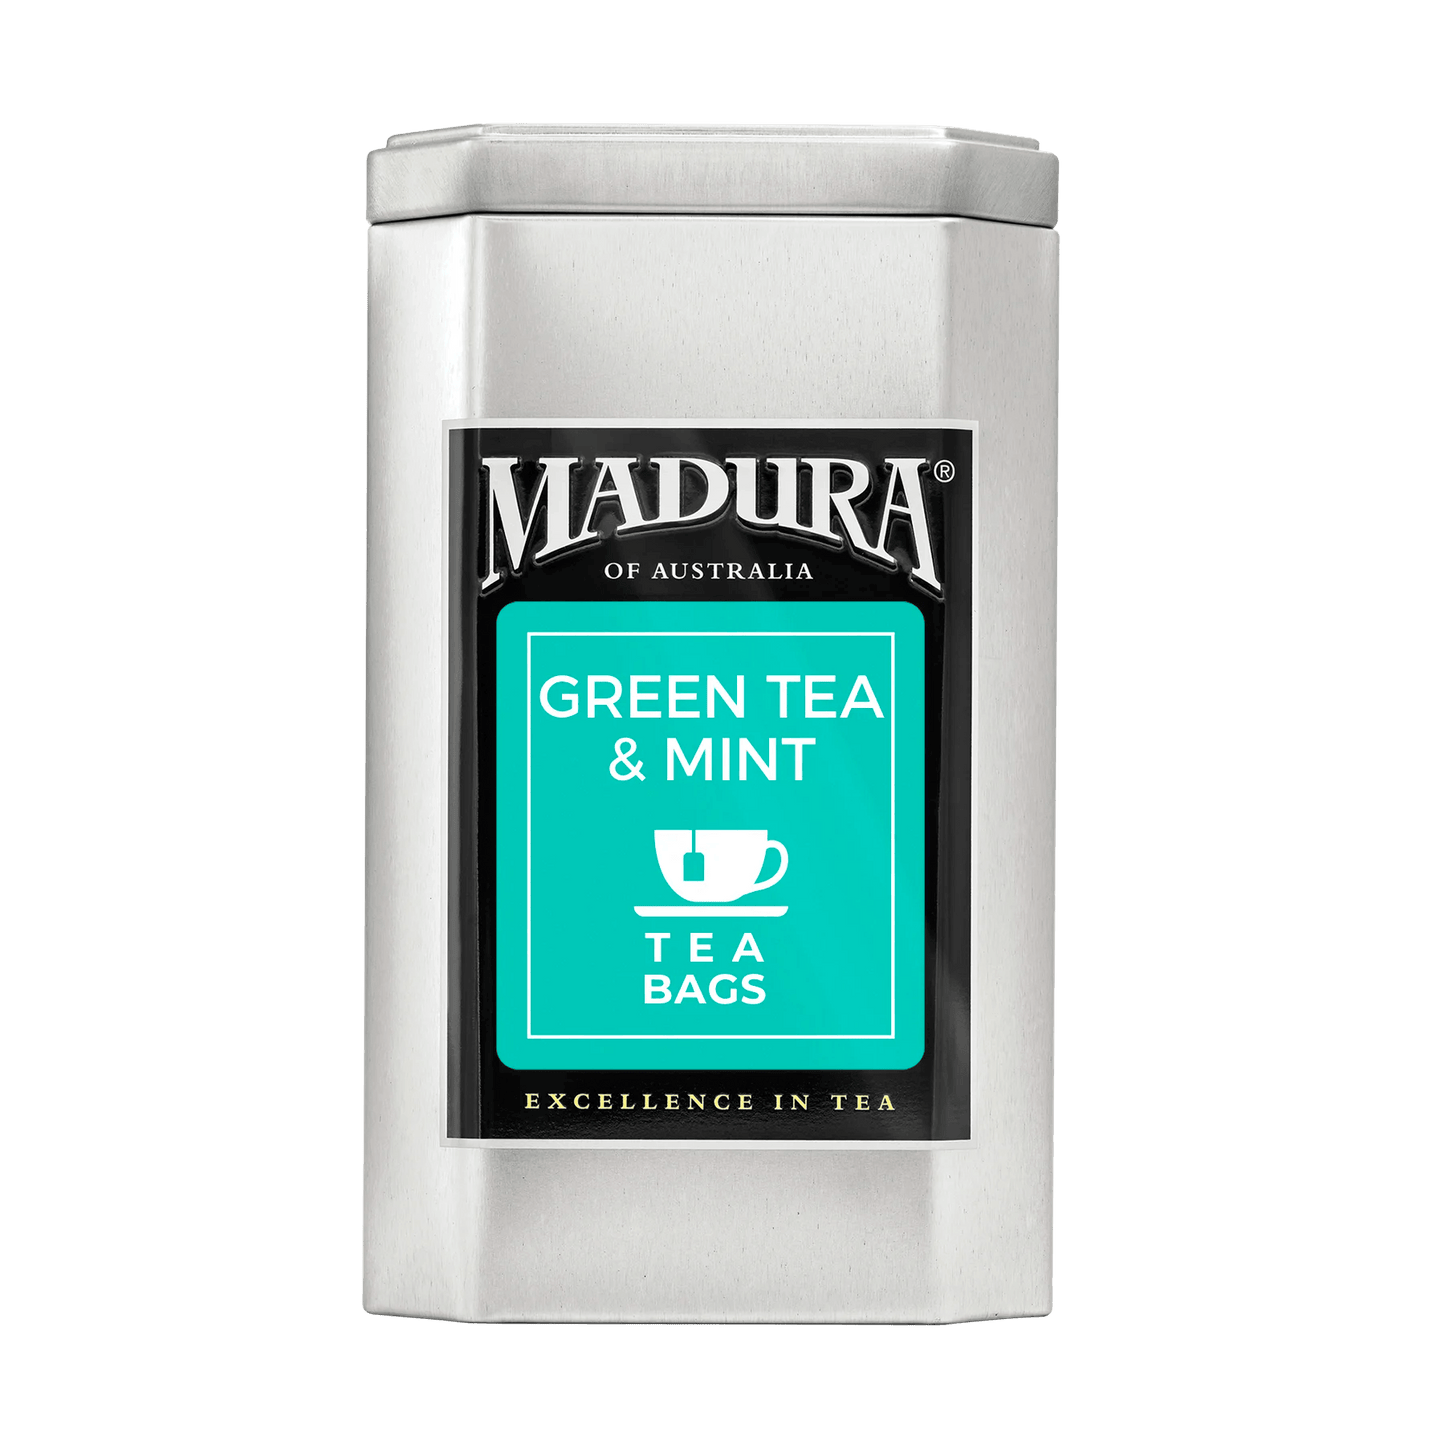 Empty Caddy with Green Tea & Mint Tea Bags Label - Madura Tea